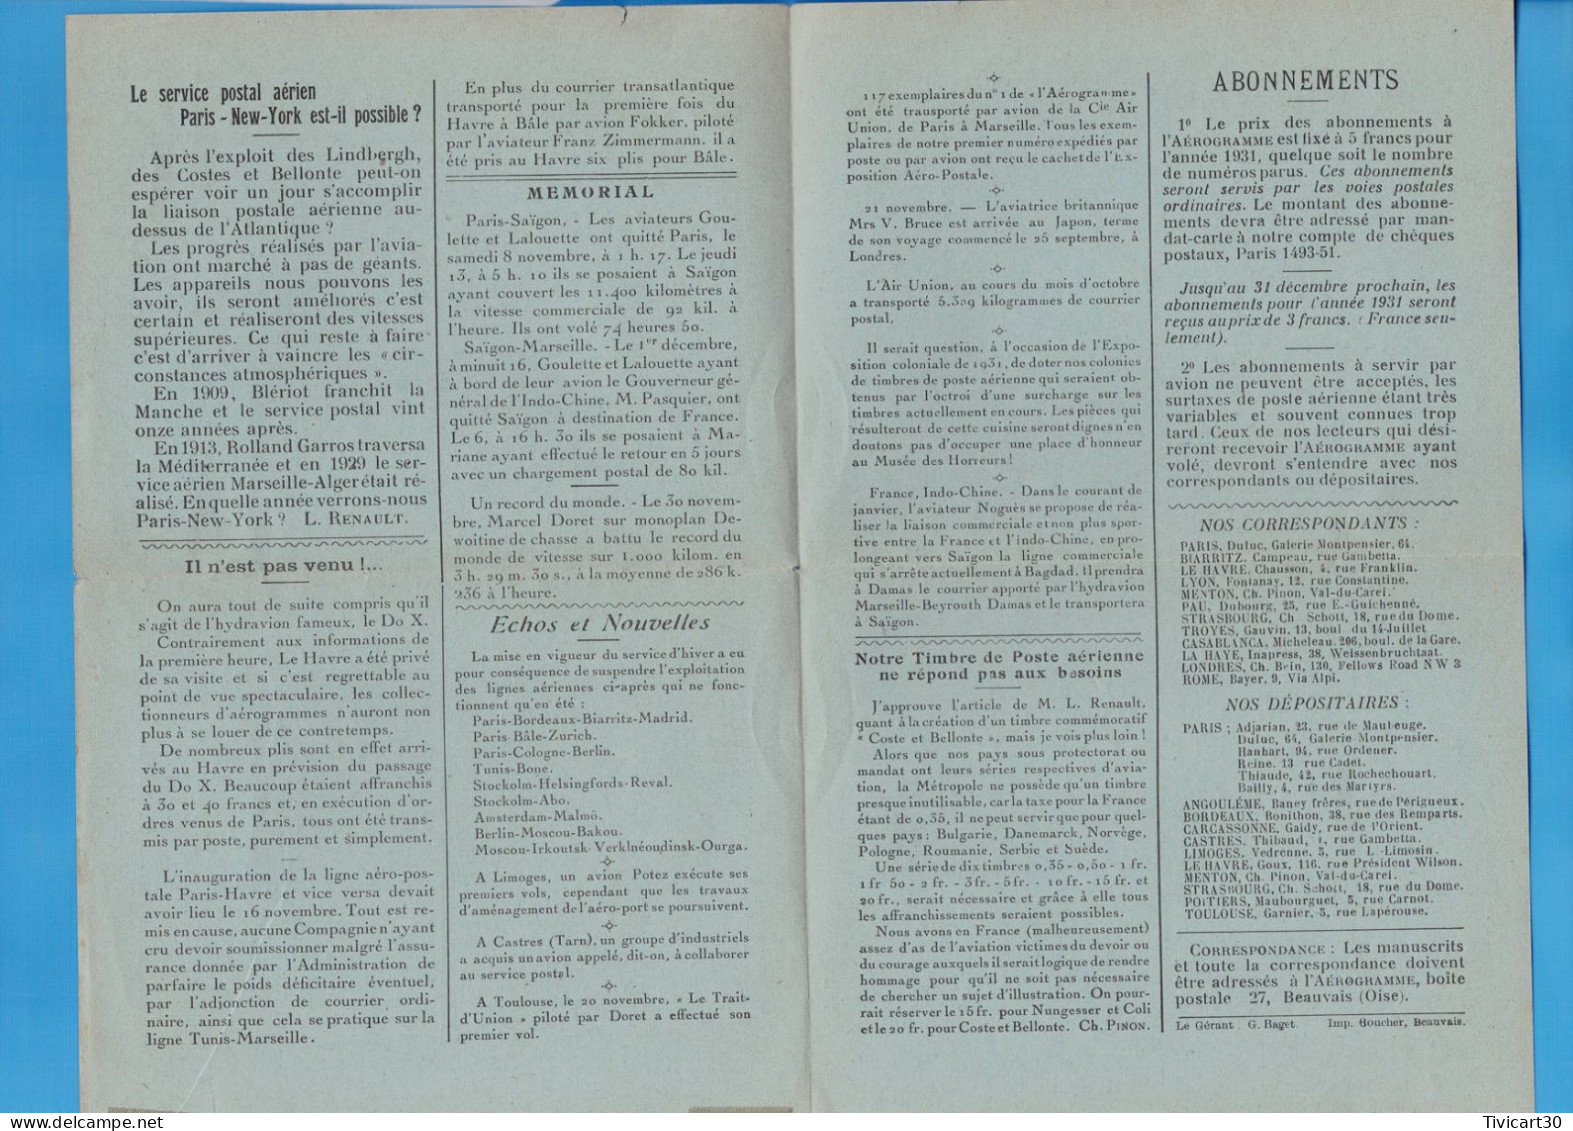 JOURNAL MENSUEL AEROPHILATELIQUE "L'AEROGRAMME" BEAUVAIS (OISE) - N°2 DECEMBRE 1930 - PAR AVION - 1927-1959 Briefe & Dokumente